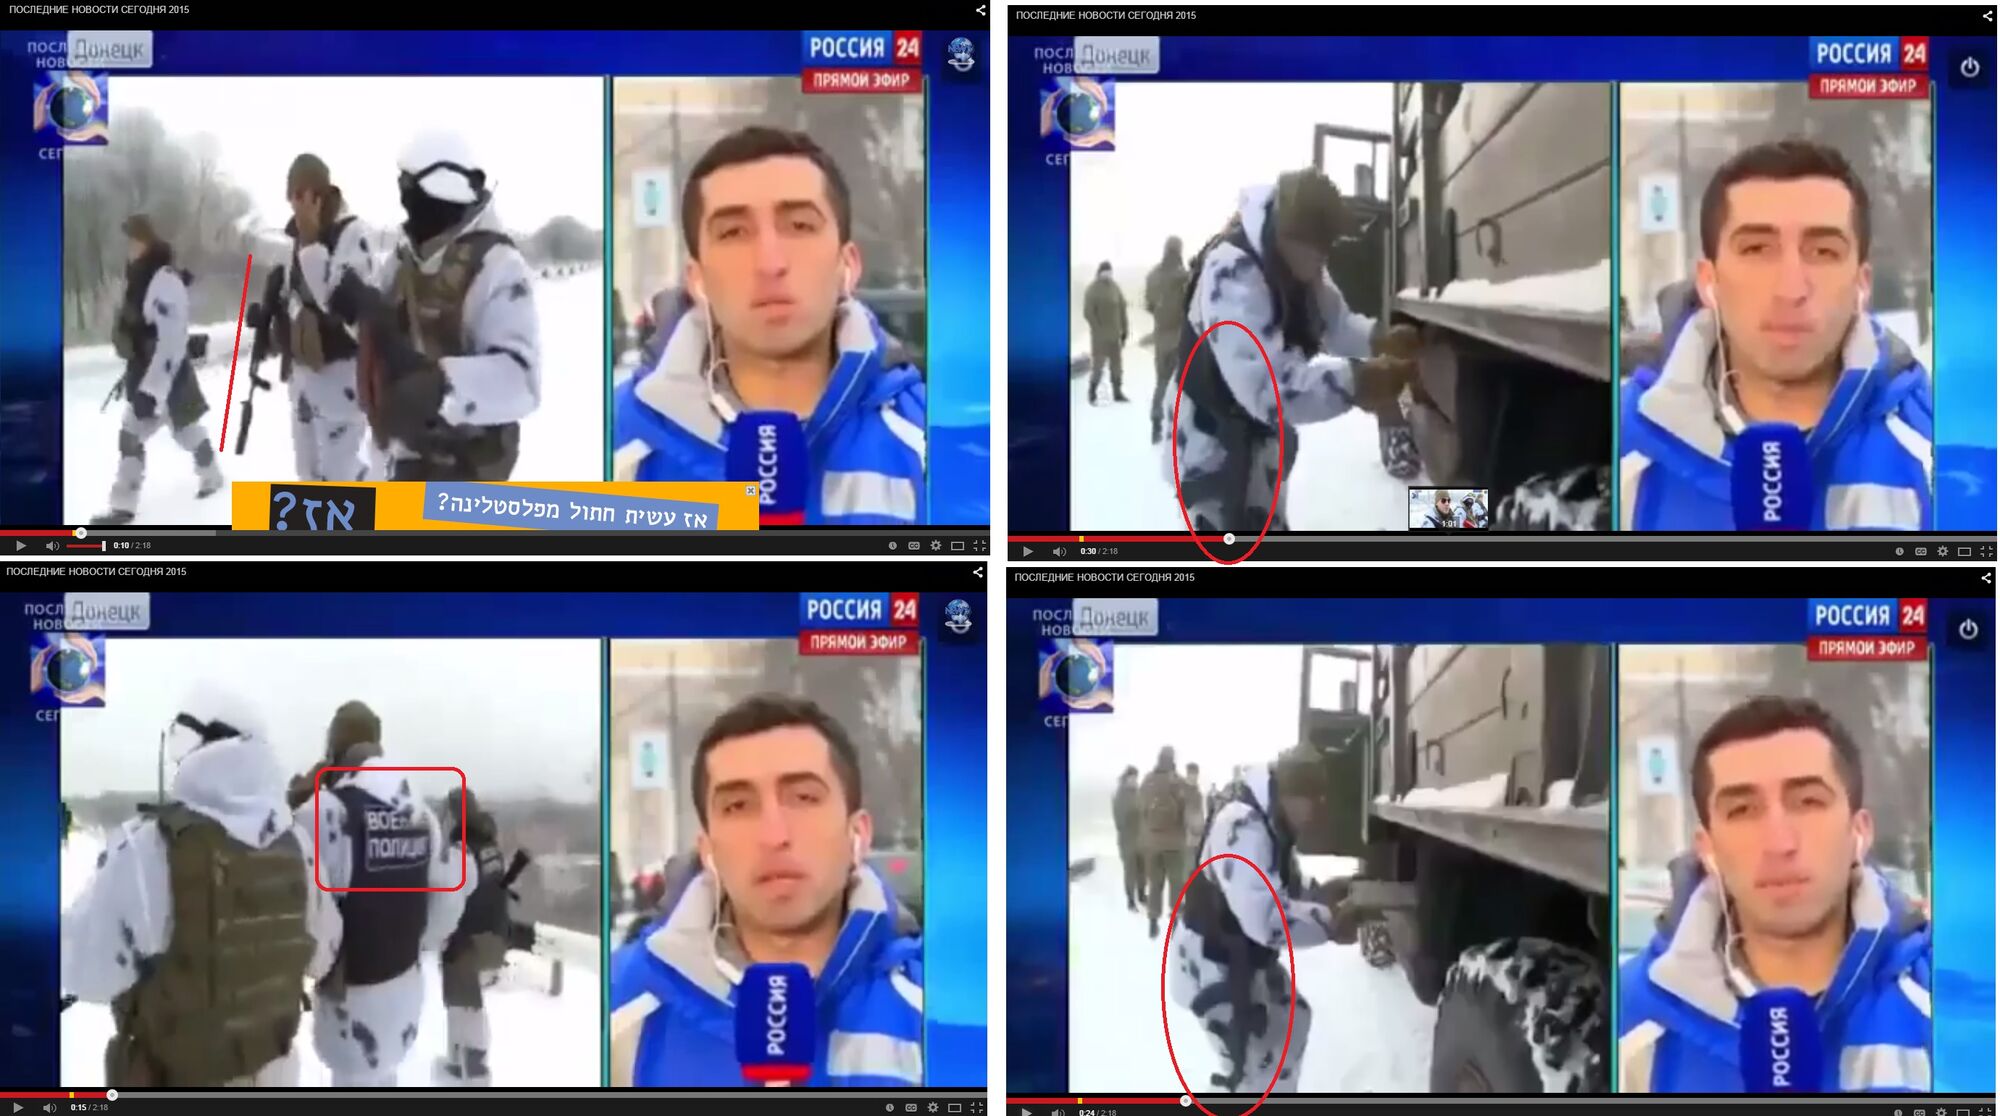 На Донбассе идентифицированы российские спецназовцы, аннексировавшие Крым: фото- и видеофакты